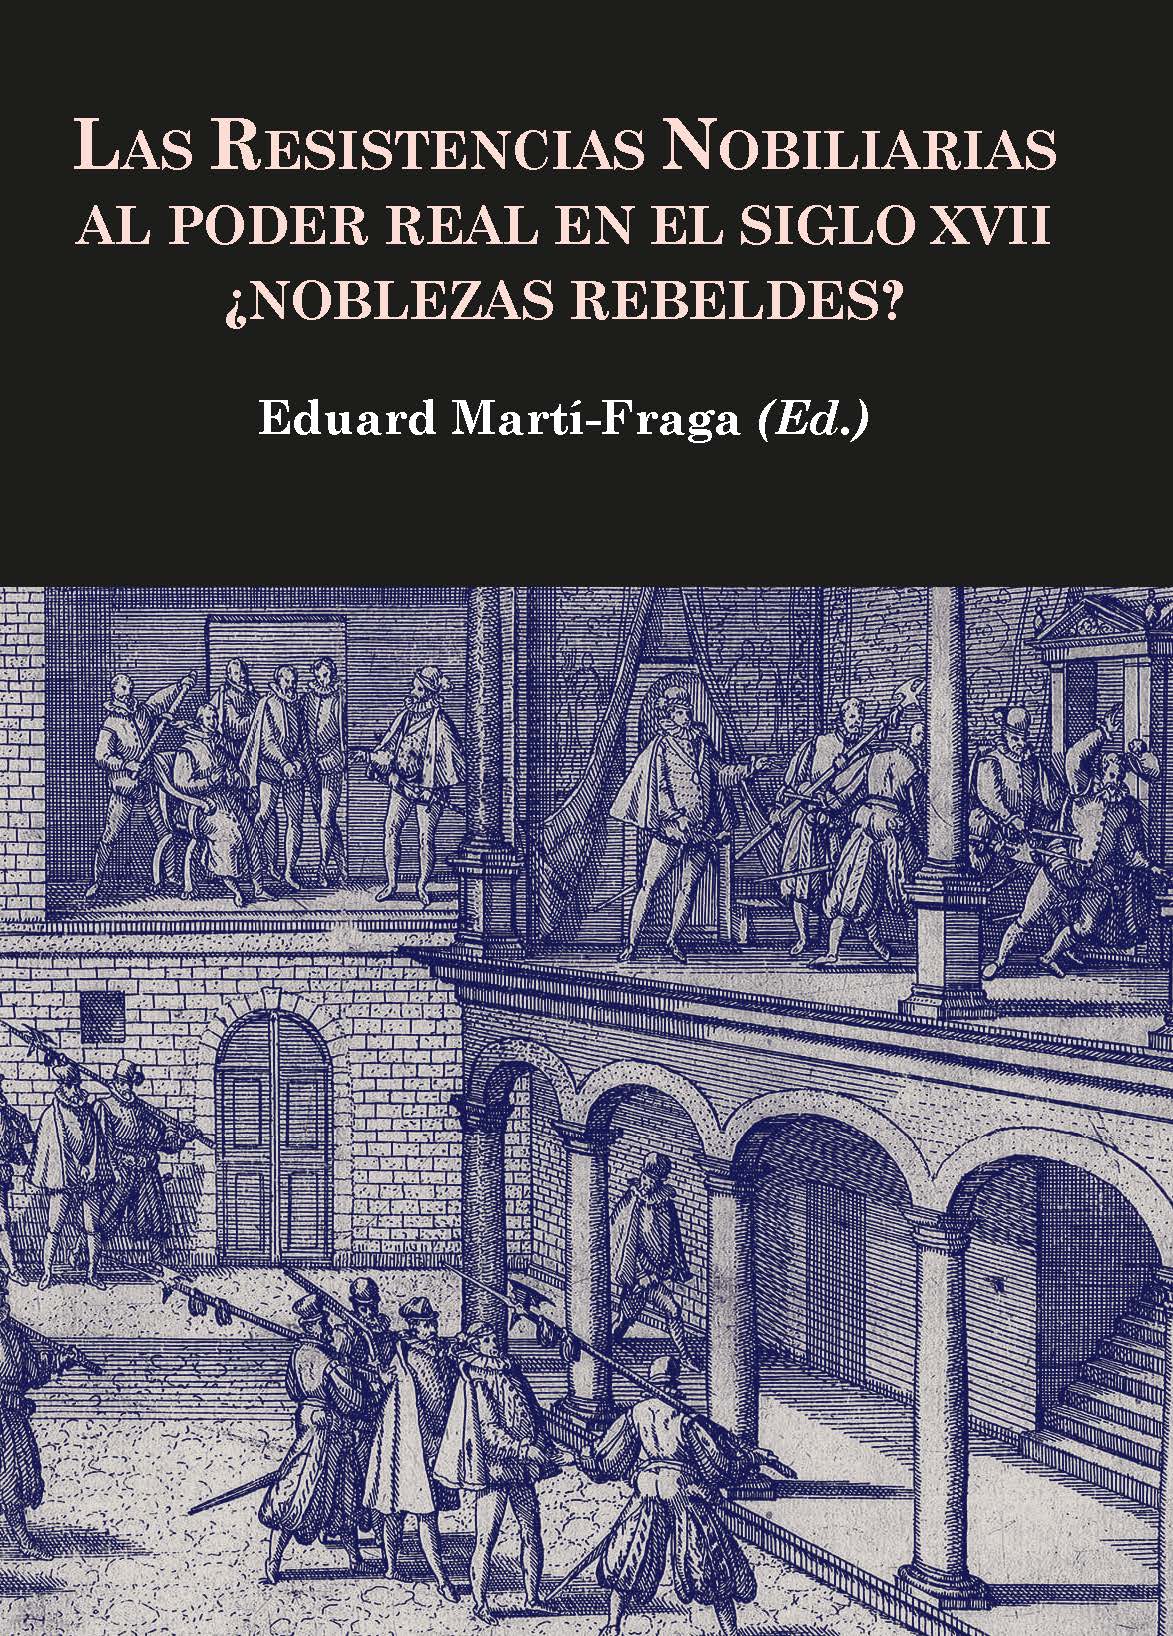 Las resistencias nobiliarias al poder real en el siglo XVII Noblezas rebeldes?